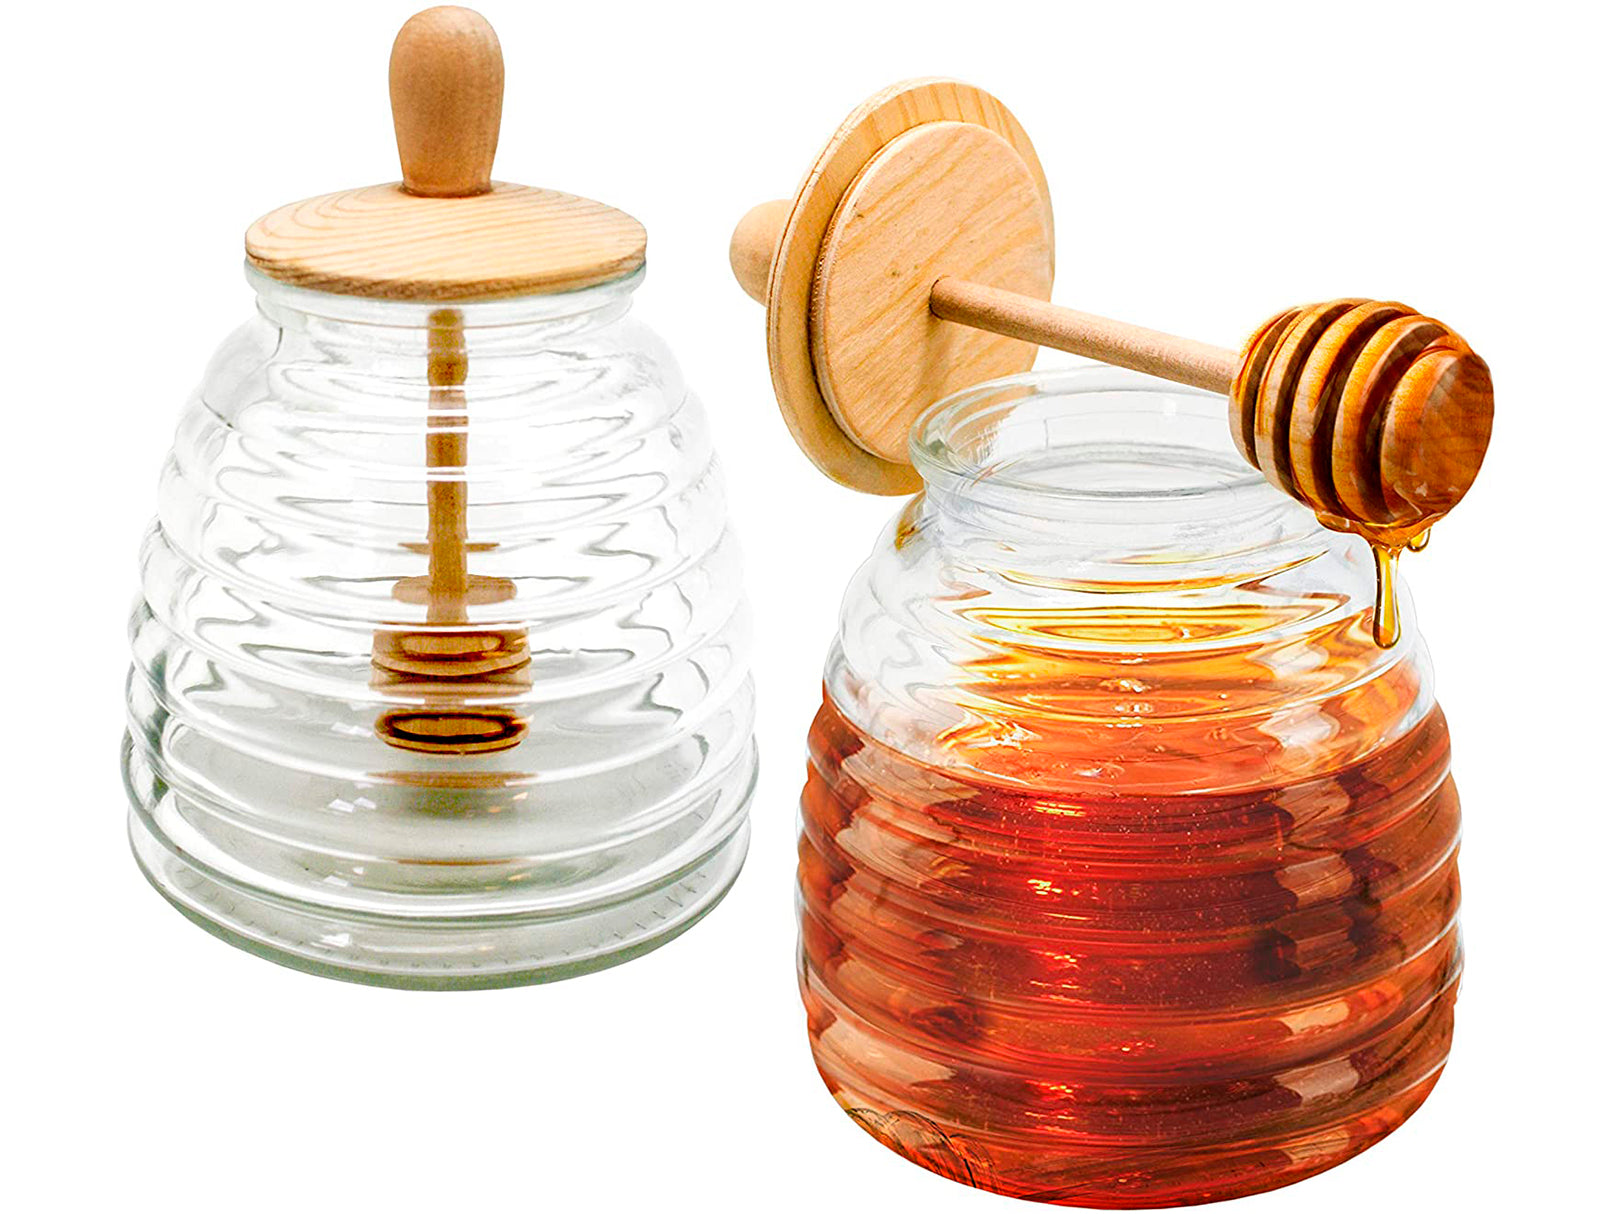 El misterio del tarro de miel